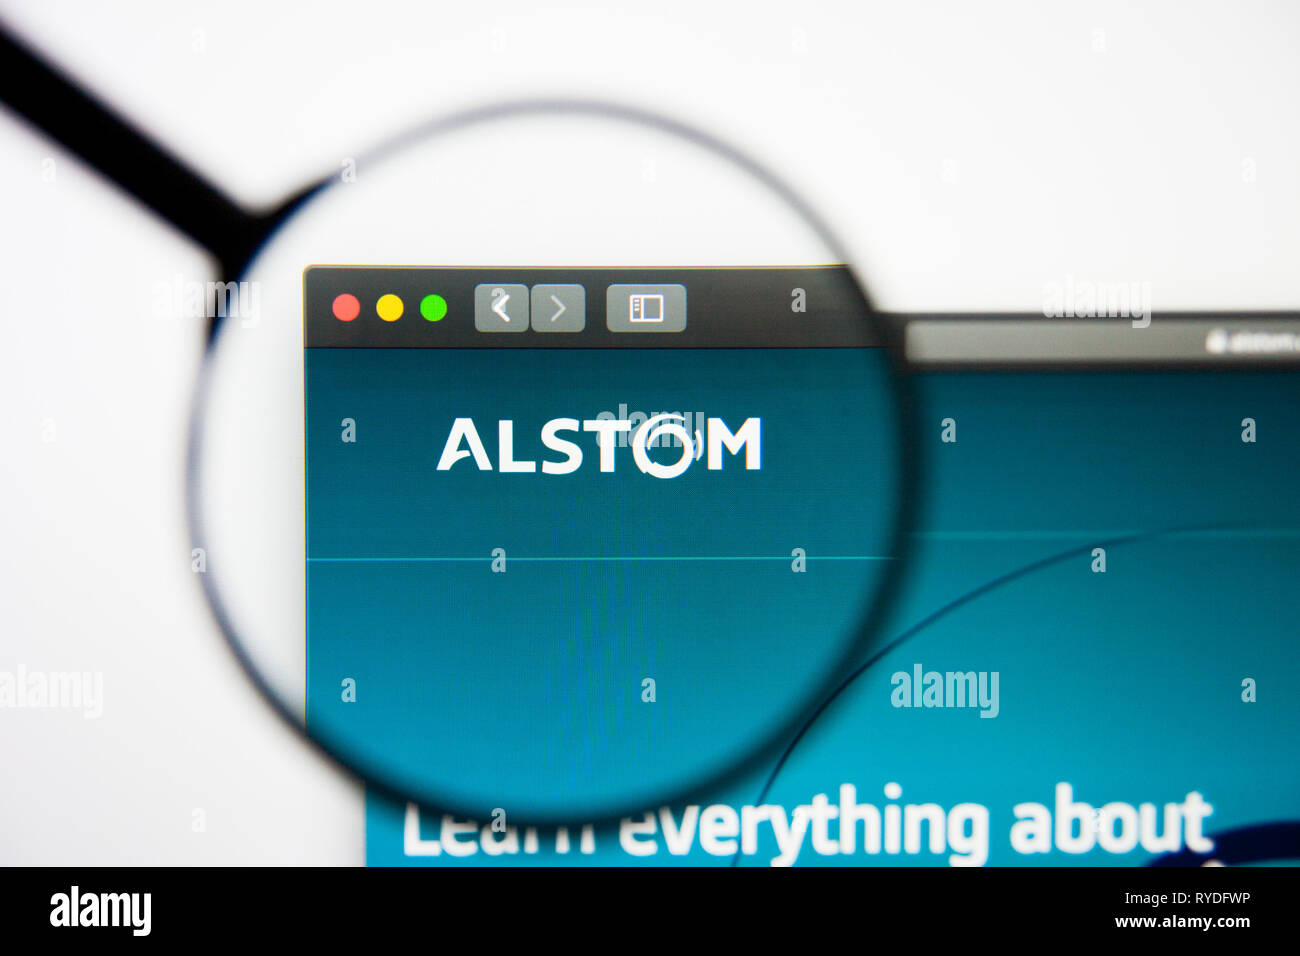 Los Angeles, Californie, USA - 5 mars 2019 : Alstom accueil du site. Logo Alstom visible sur l'écran d'affichage, de rédaction d'illustration Banque D'Images